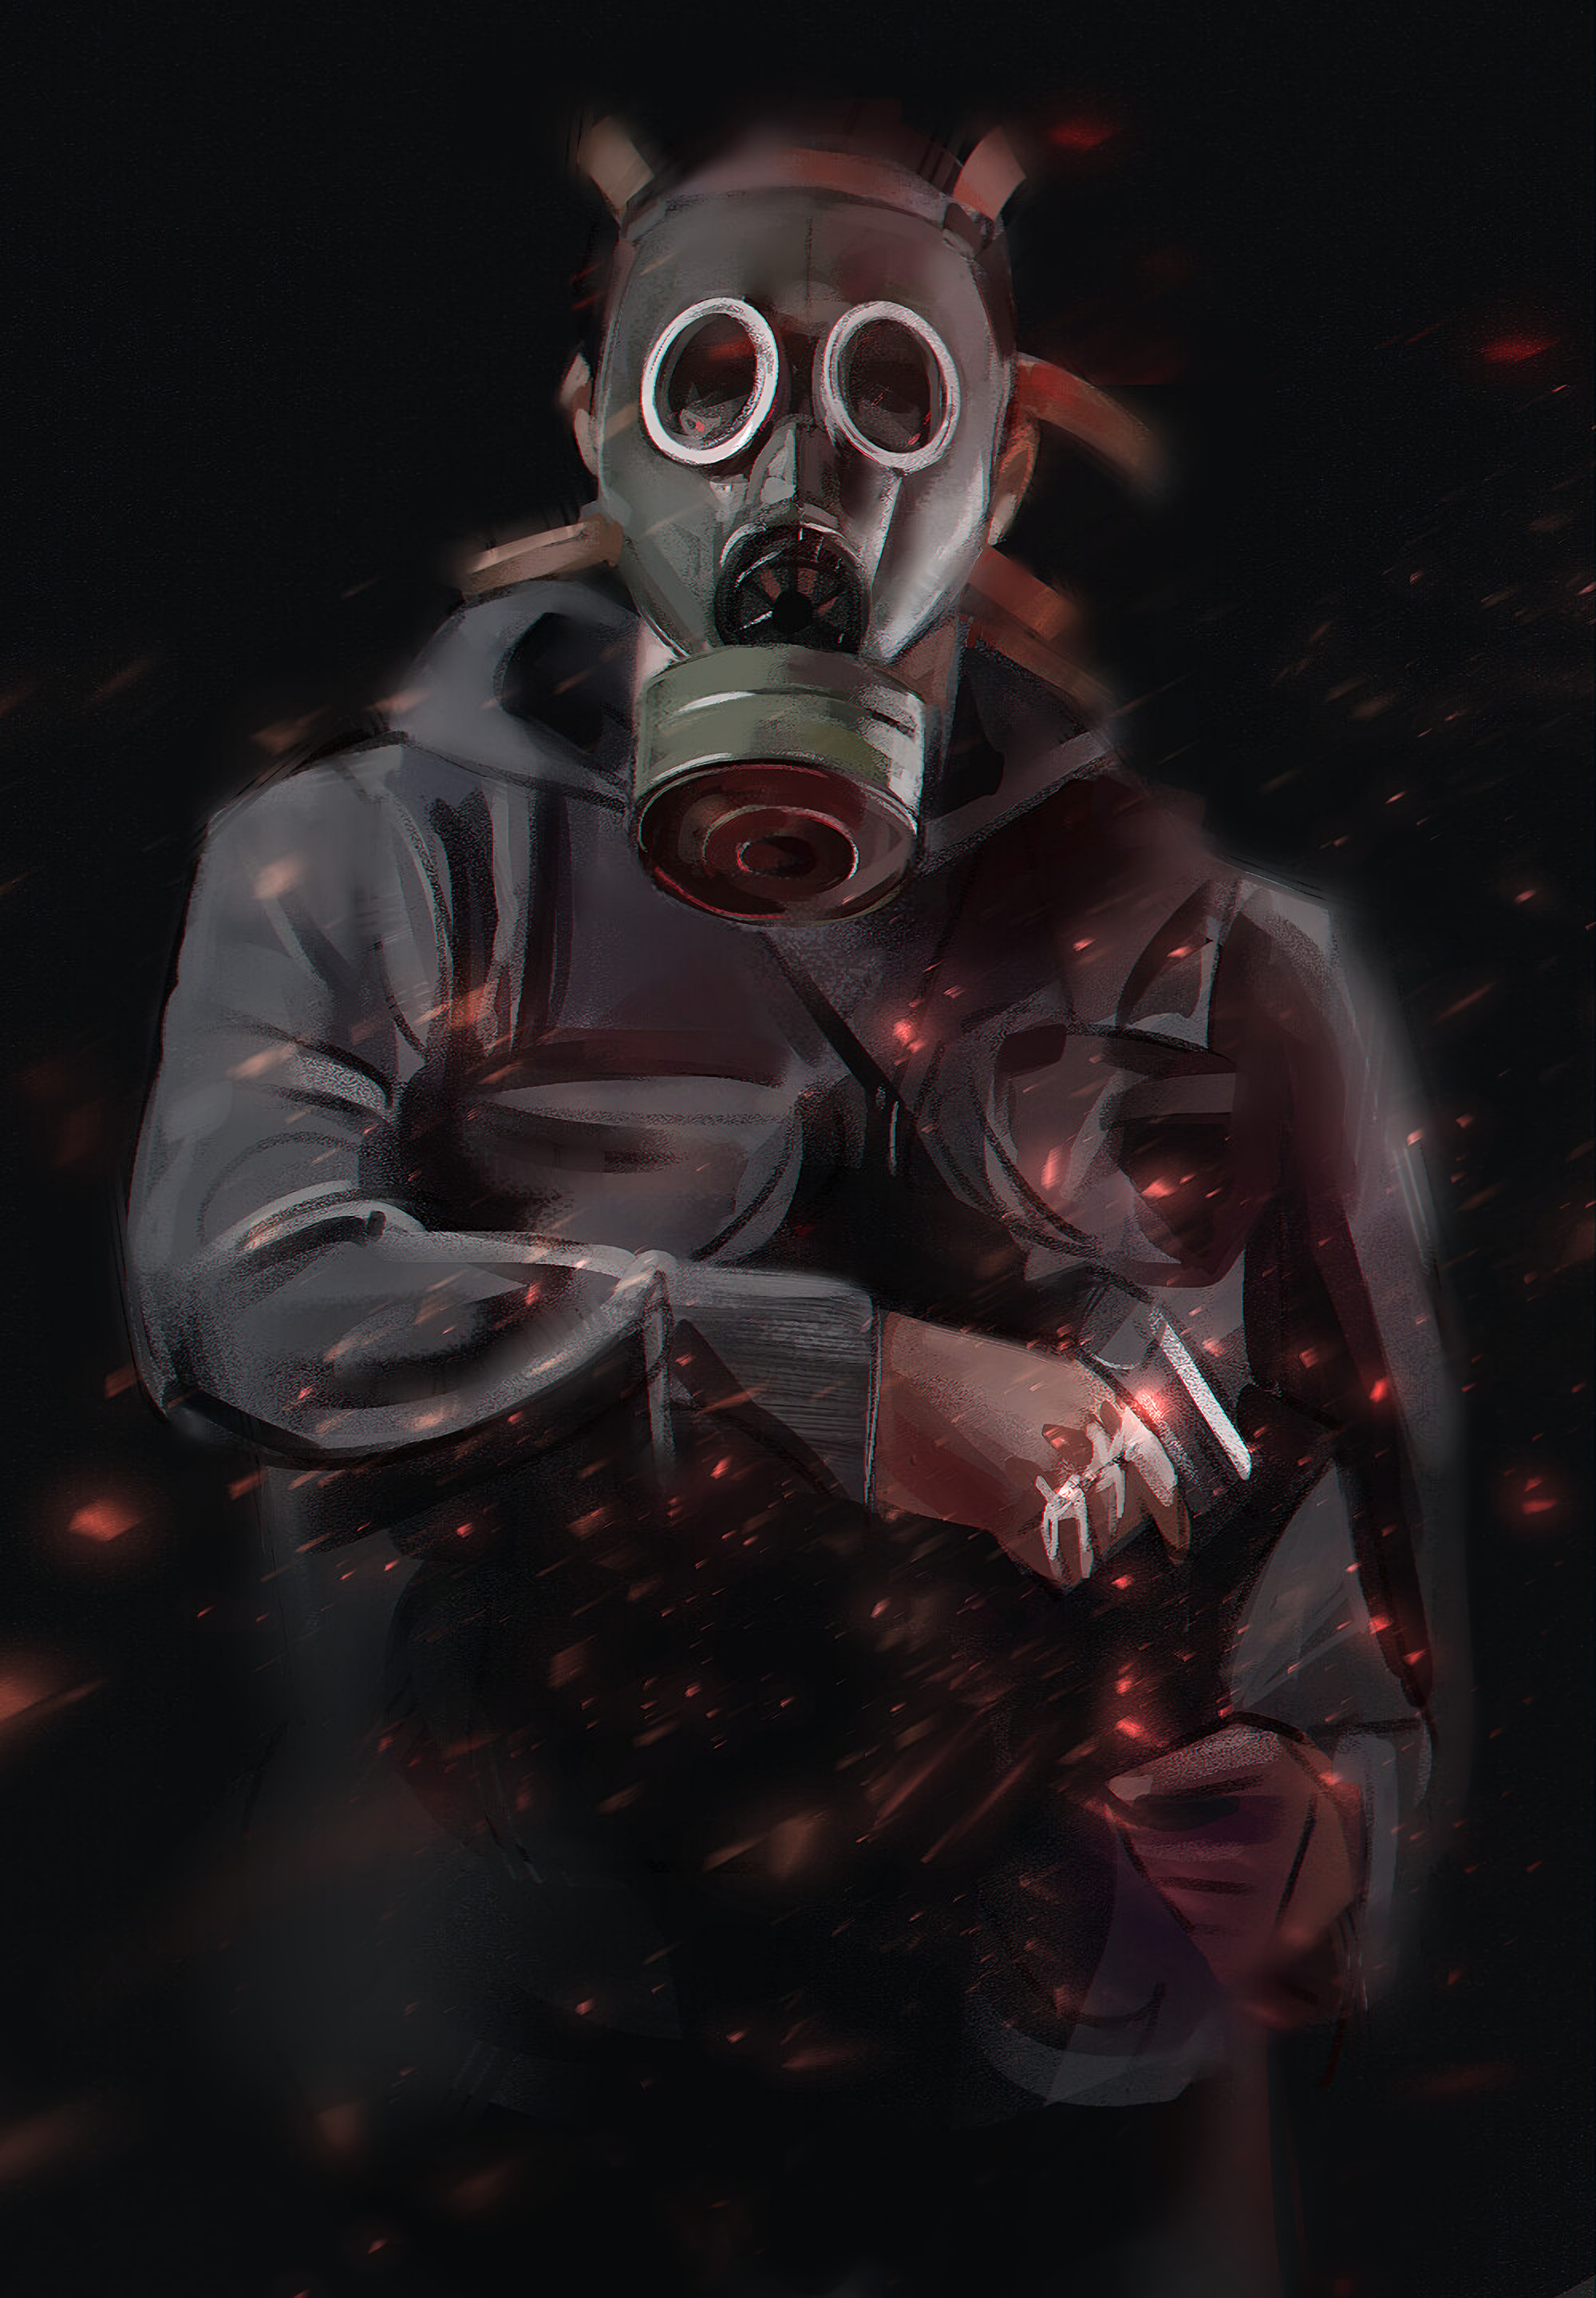 Man Gas-mask Mask Art